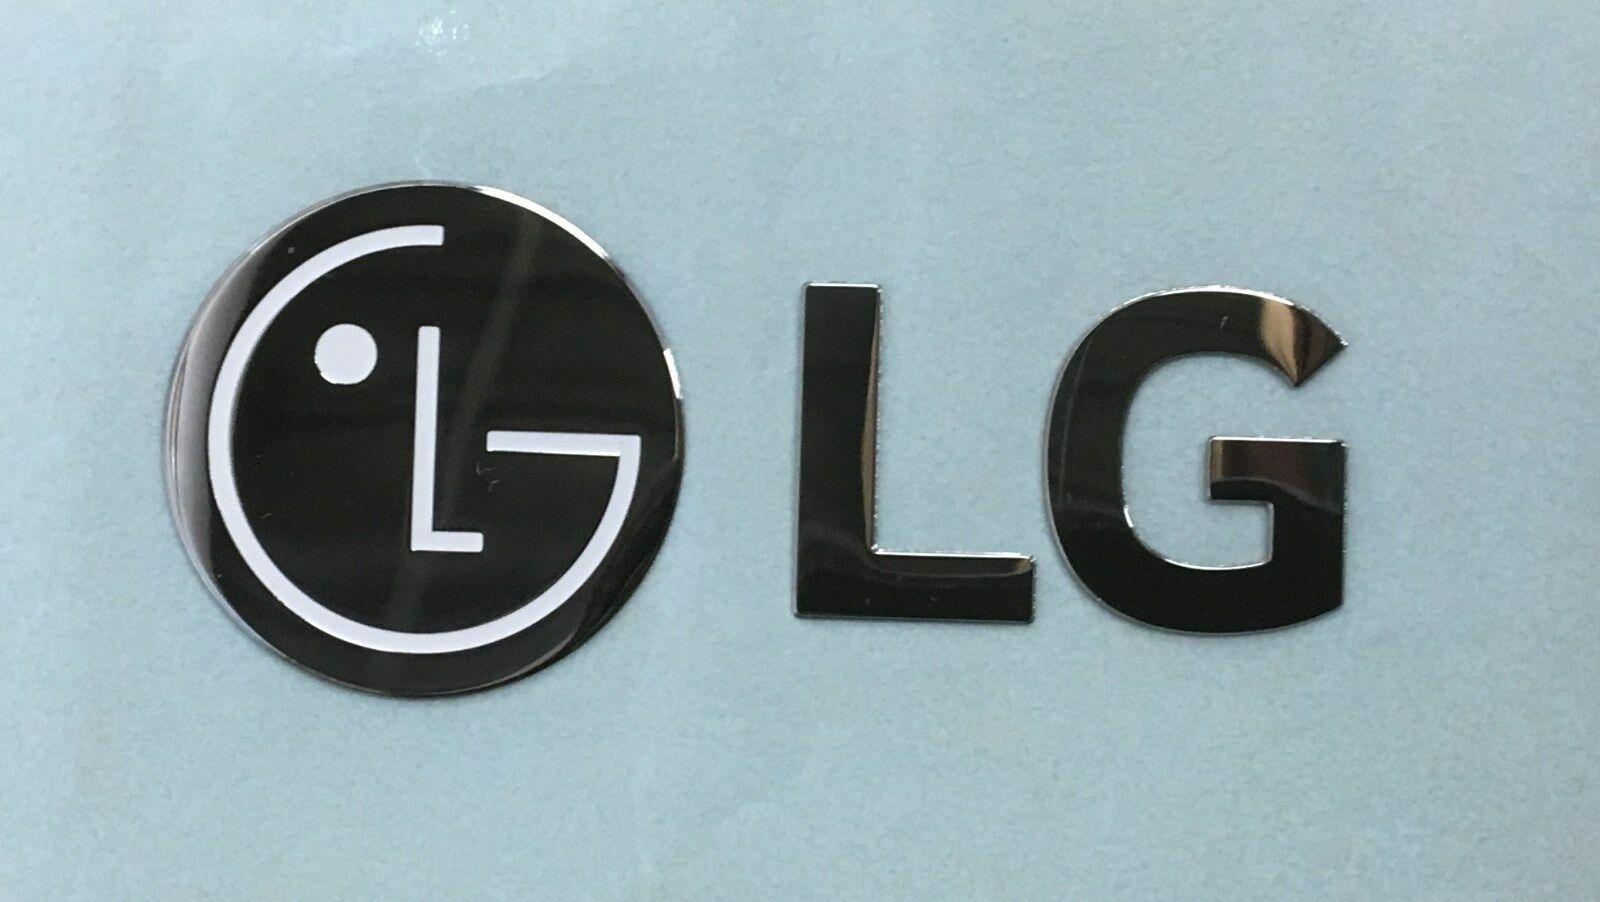 Refrigerator Logo - LG Refrigerator Logo Chrome Name Plate Sticker Decal MFT62346508 | eBay